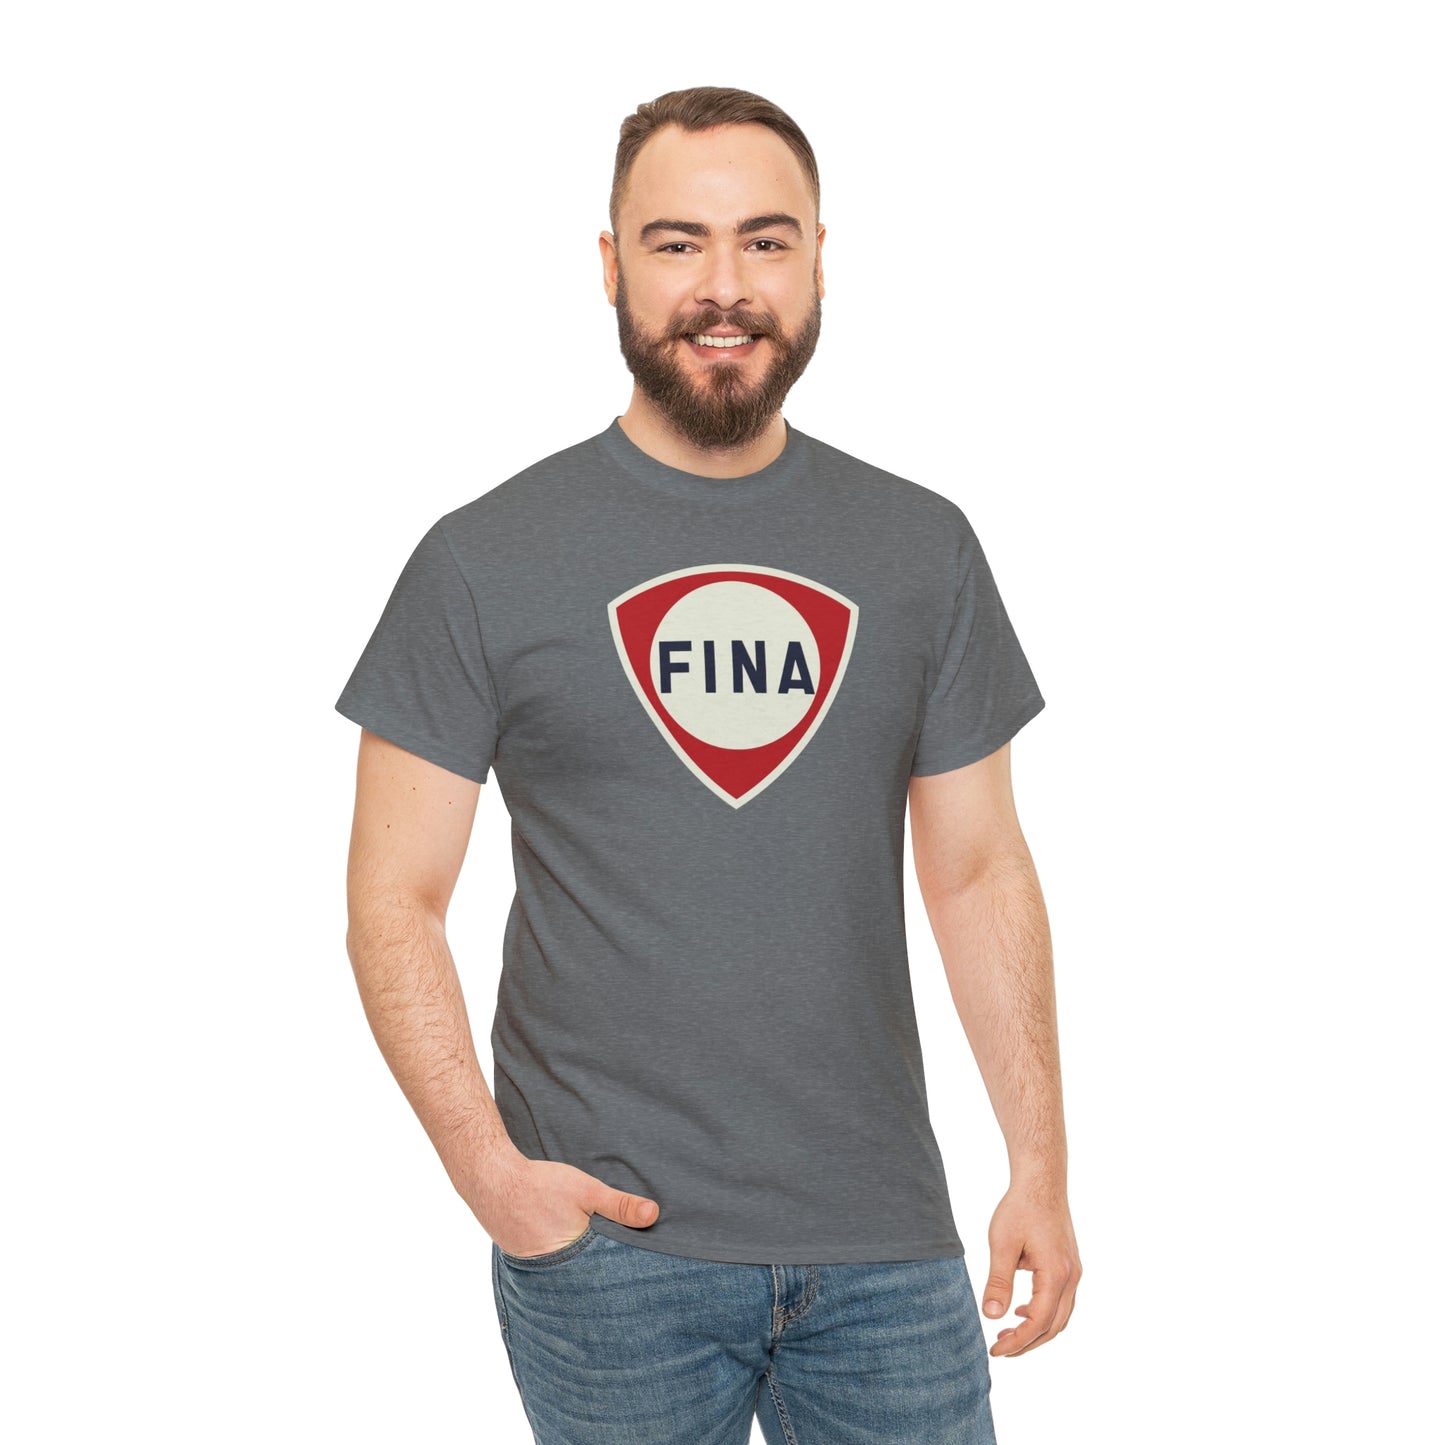 Fina T-Shirt